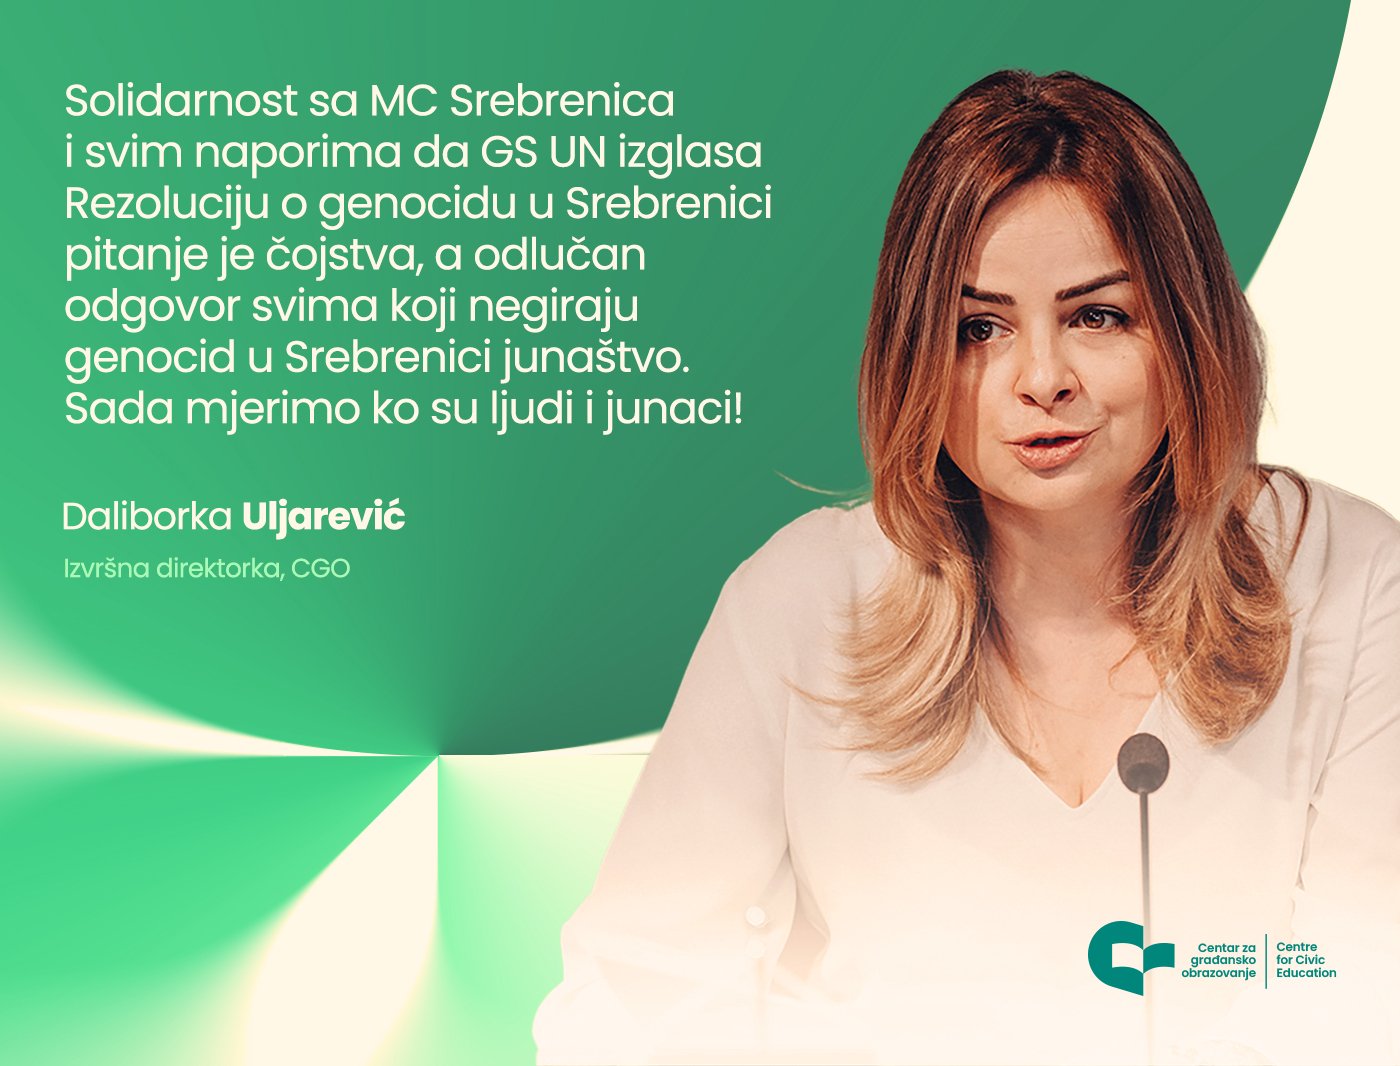 Uljarević: Podrška kampanji MC Srebrenica